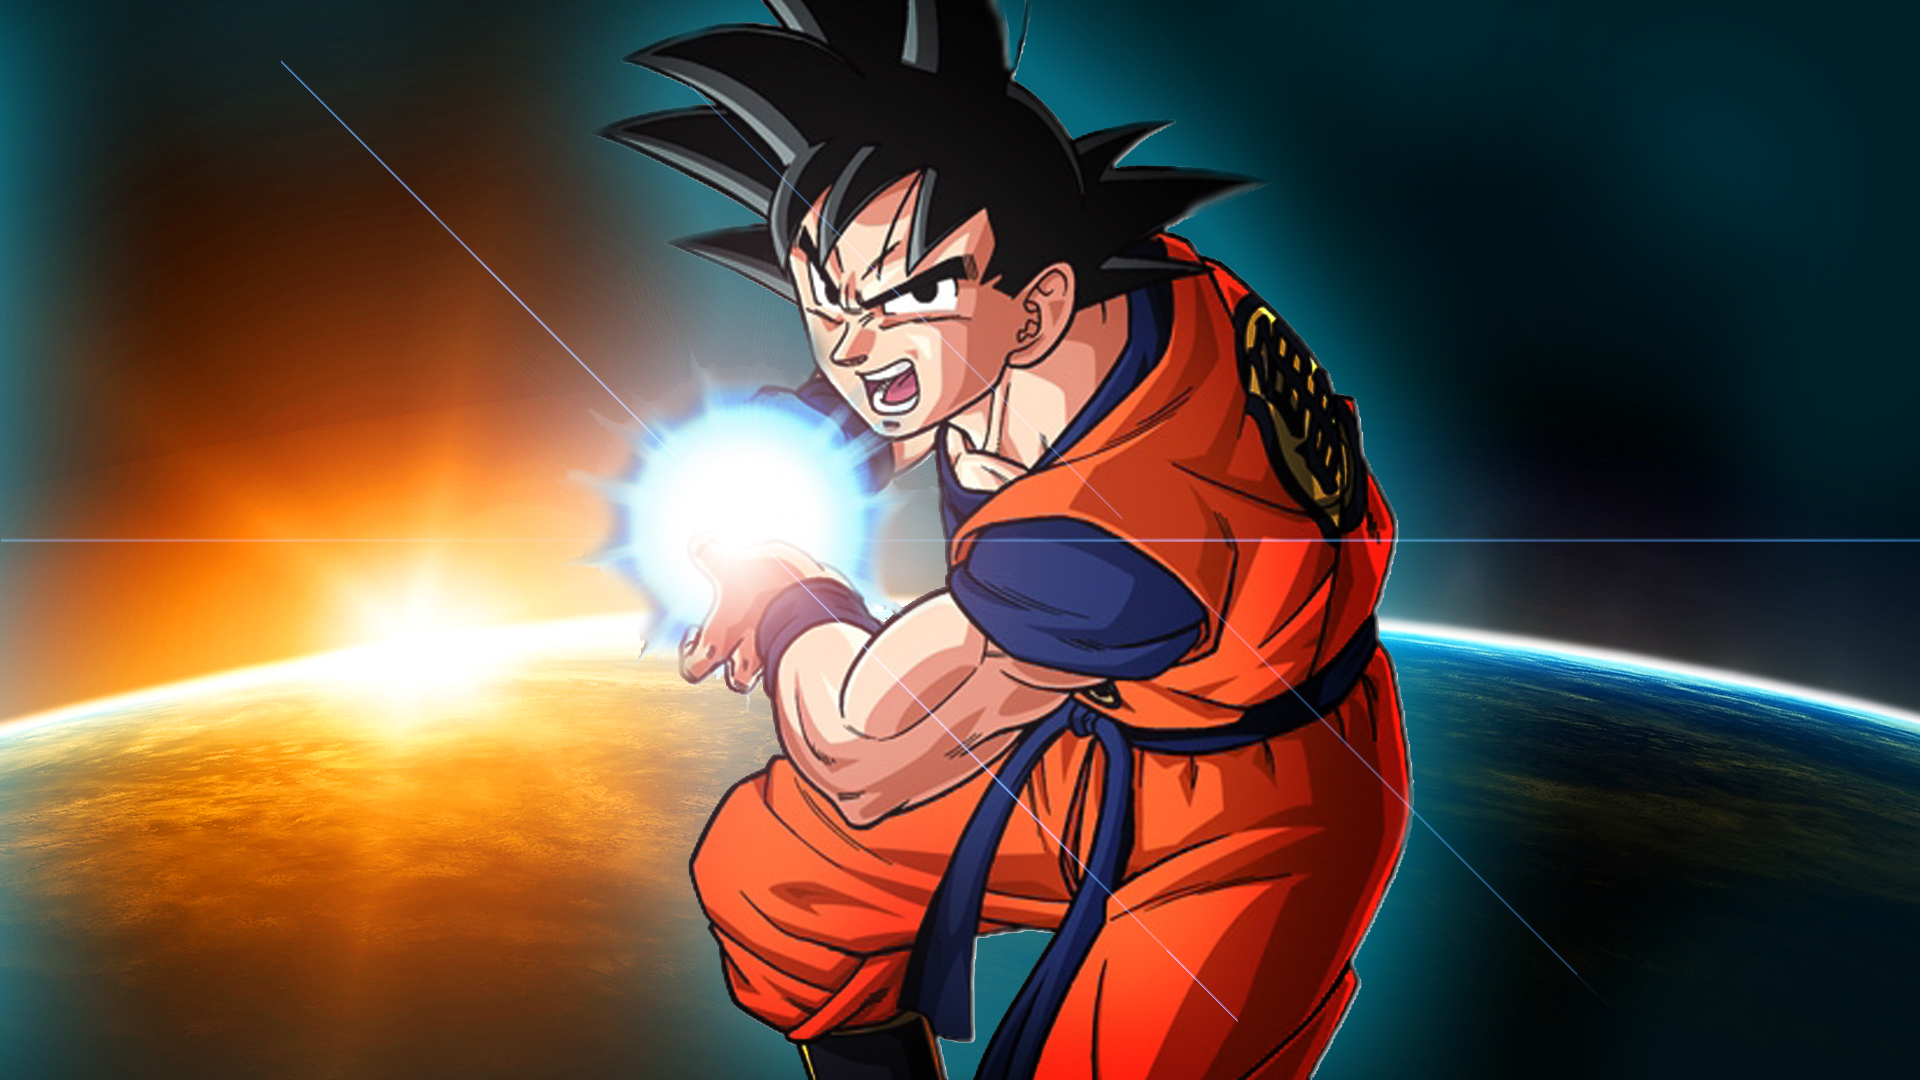 77+] Goku Backgrounds - WallpaperSafari - Đội ngũ thiết kế của WallpaperSafari đã tạo ra bộ 77+ hình nền với chủ đề Goku để các fan của Dragon Ball Super có thể lựa chọn cho mình một hình nền độc đáo và ấn tượng. Hãy cùng xem ảnh liên quan và lựa chọn cho mình một hình nền đẹp nhất.